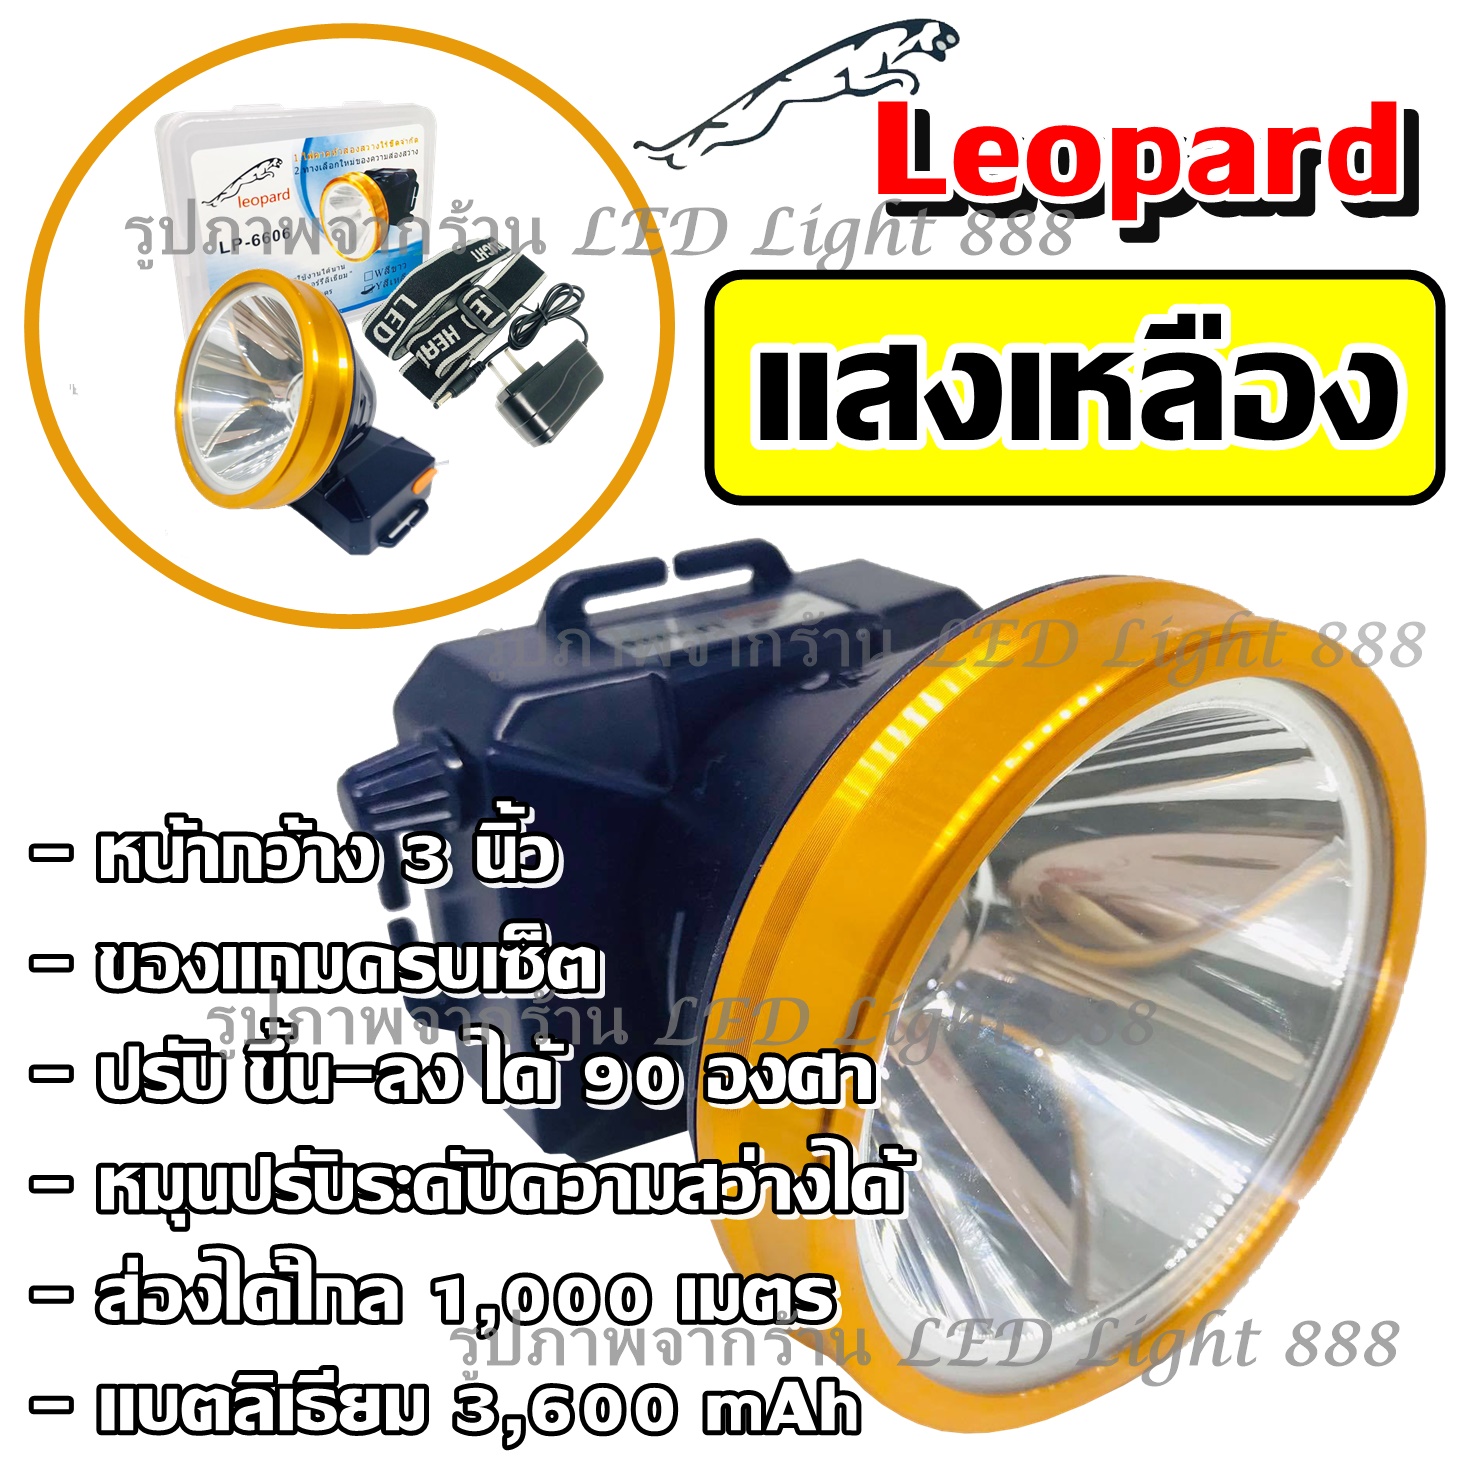 Best Flashlight พร้อมส่ง!!! LP-6606 (( แสงขาว / แสงเหลือง )) ไฟฉายคาดหัว ไฟฉายคาดศรีษะ ไฟฉายแรงสูง ไฟฉาย ตราเสือ / ตราช้าง รุ่น LP6606 ลุยฝนได้ ส่องไกล 1000 เมตร